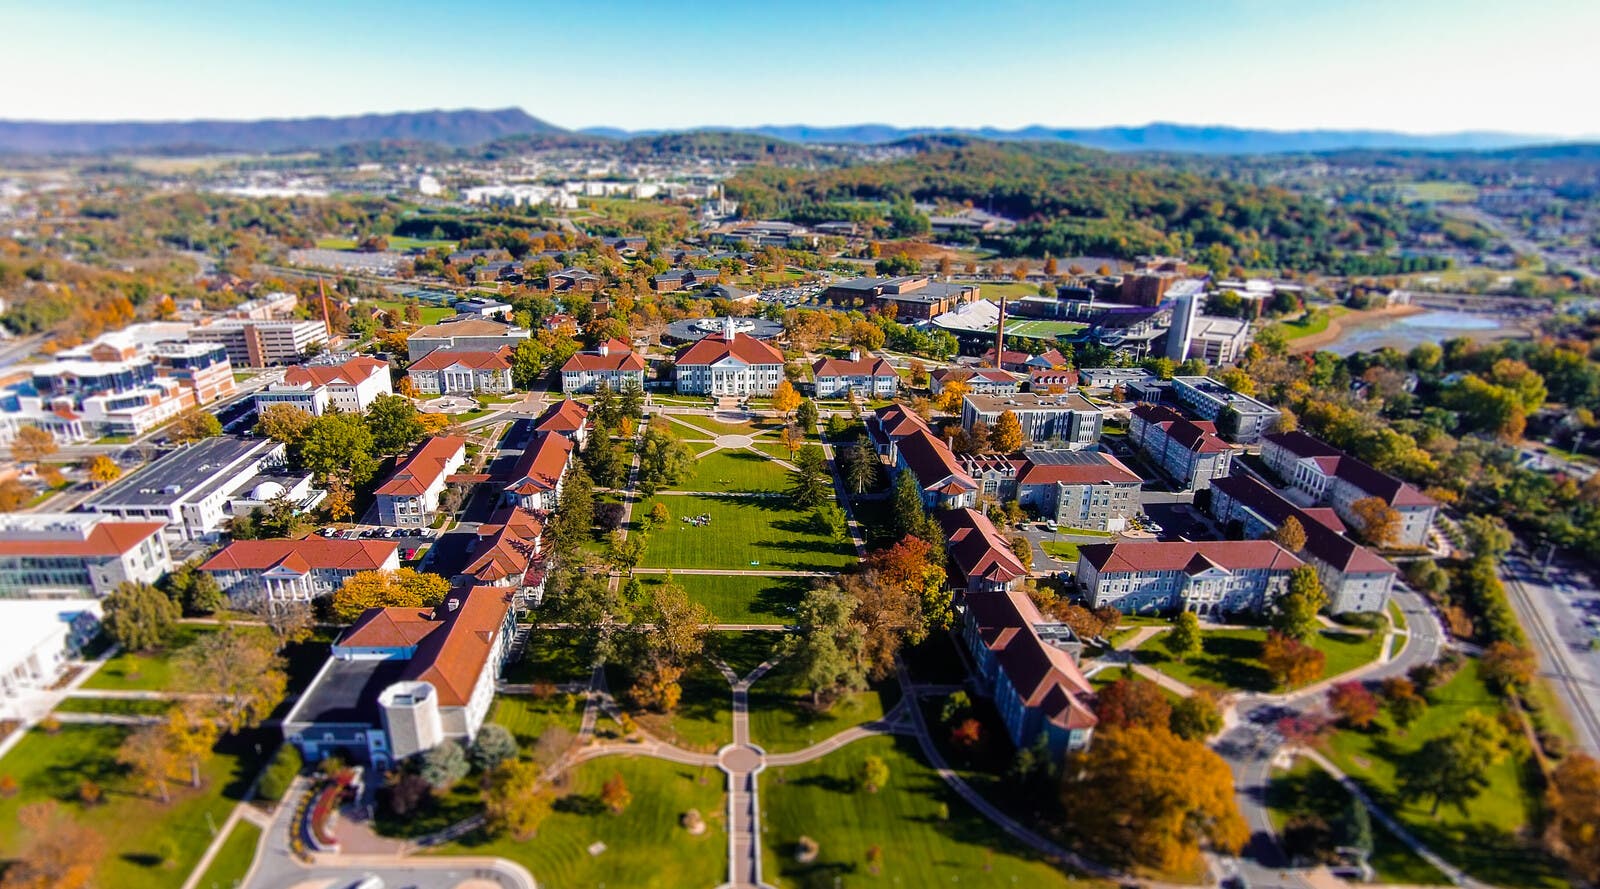 JMU campus aerial view